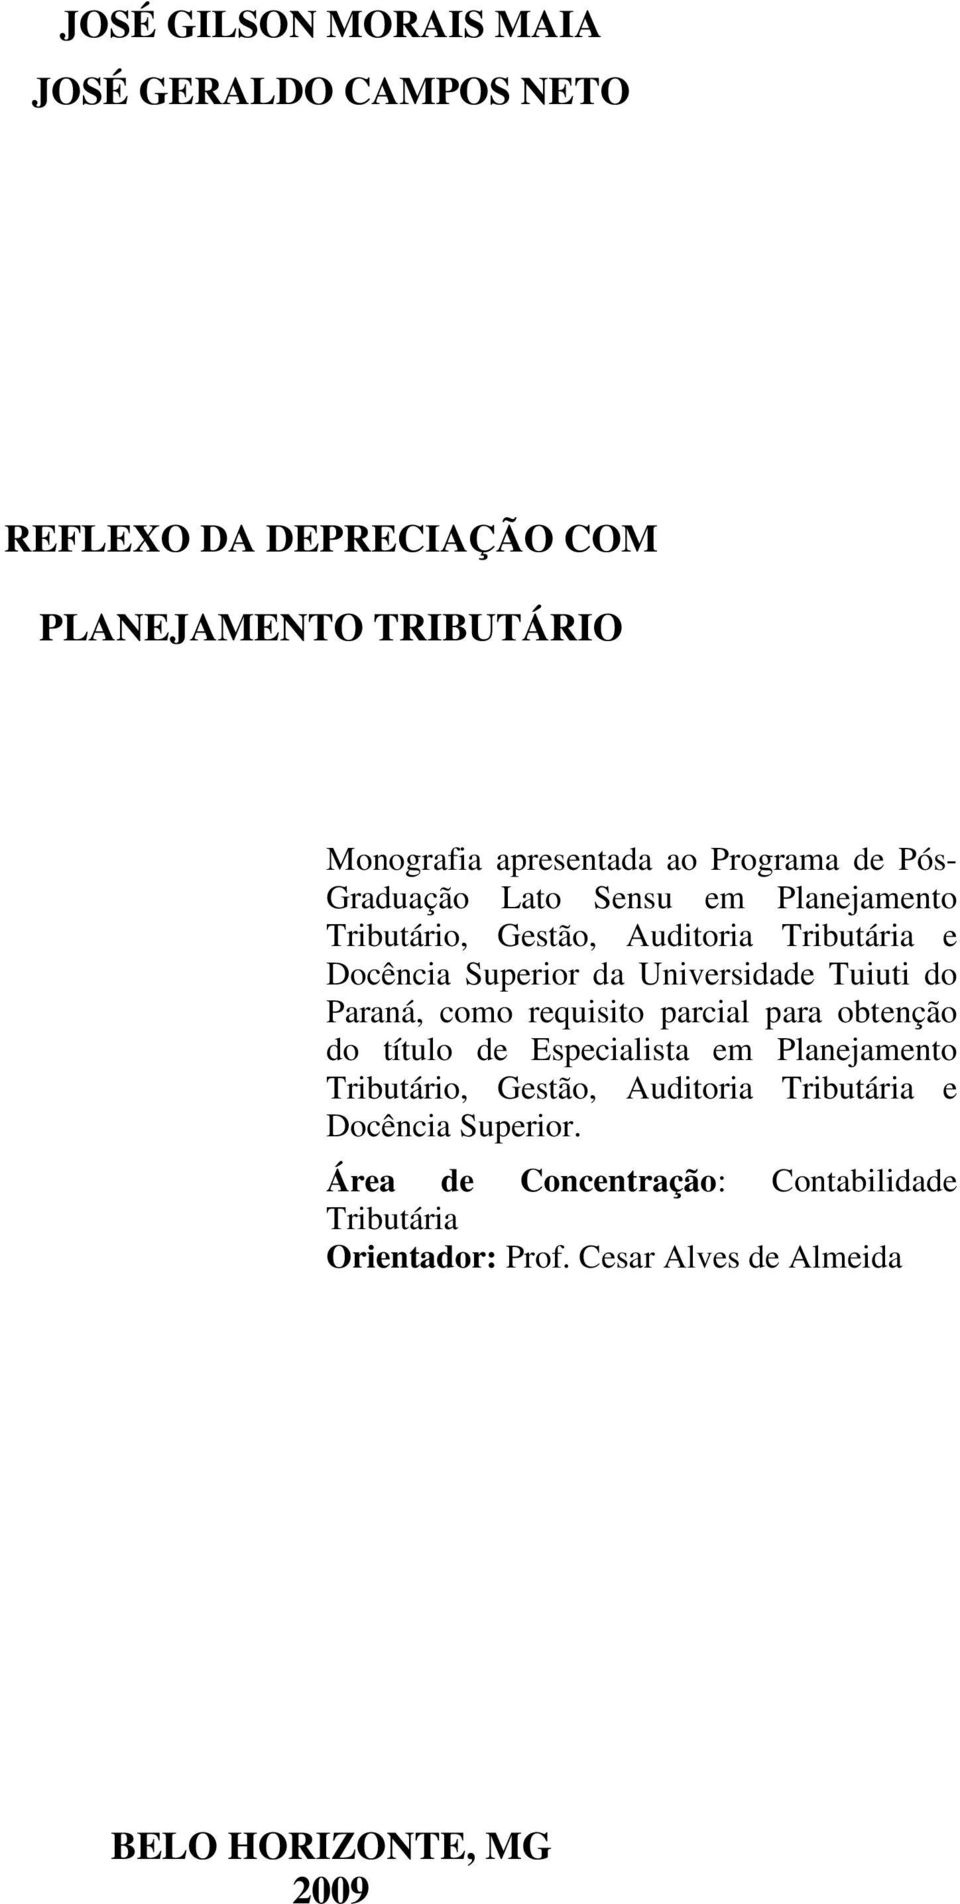 Tuiuti do Paraná, como requisito parcial para obtenção do título de Especialista em Planejamento Tributário, Gestão, Auditoria